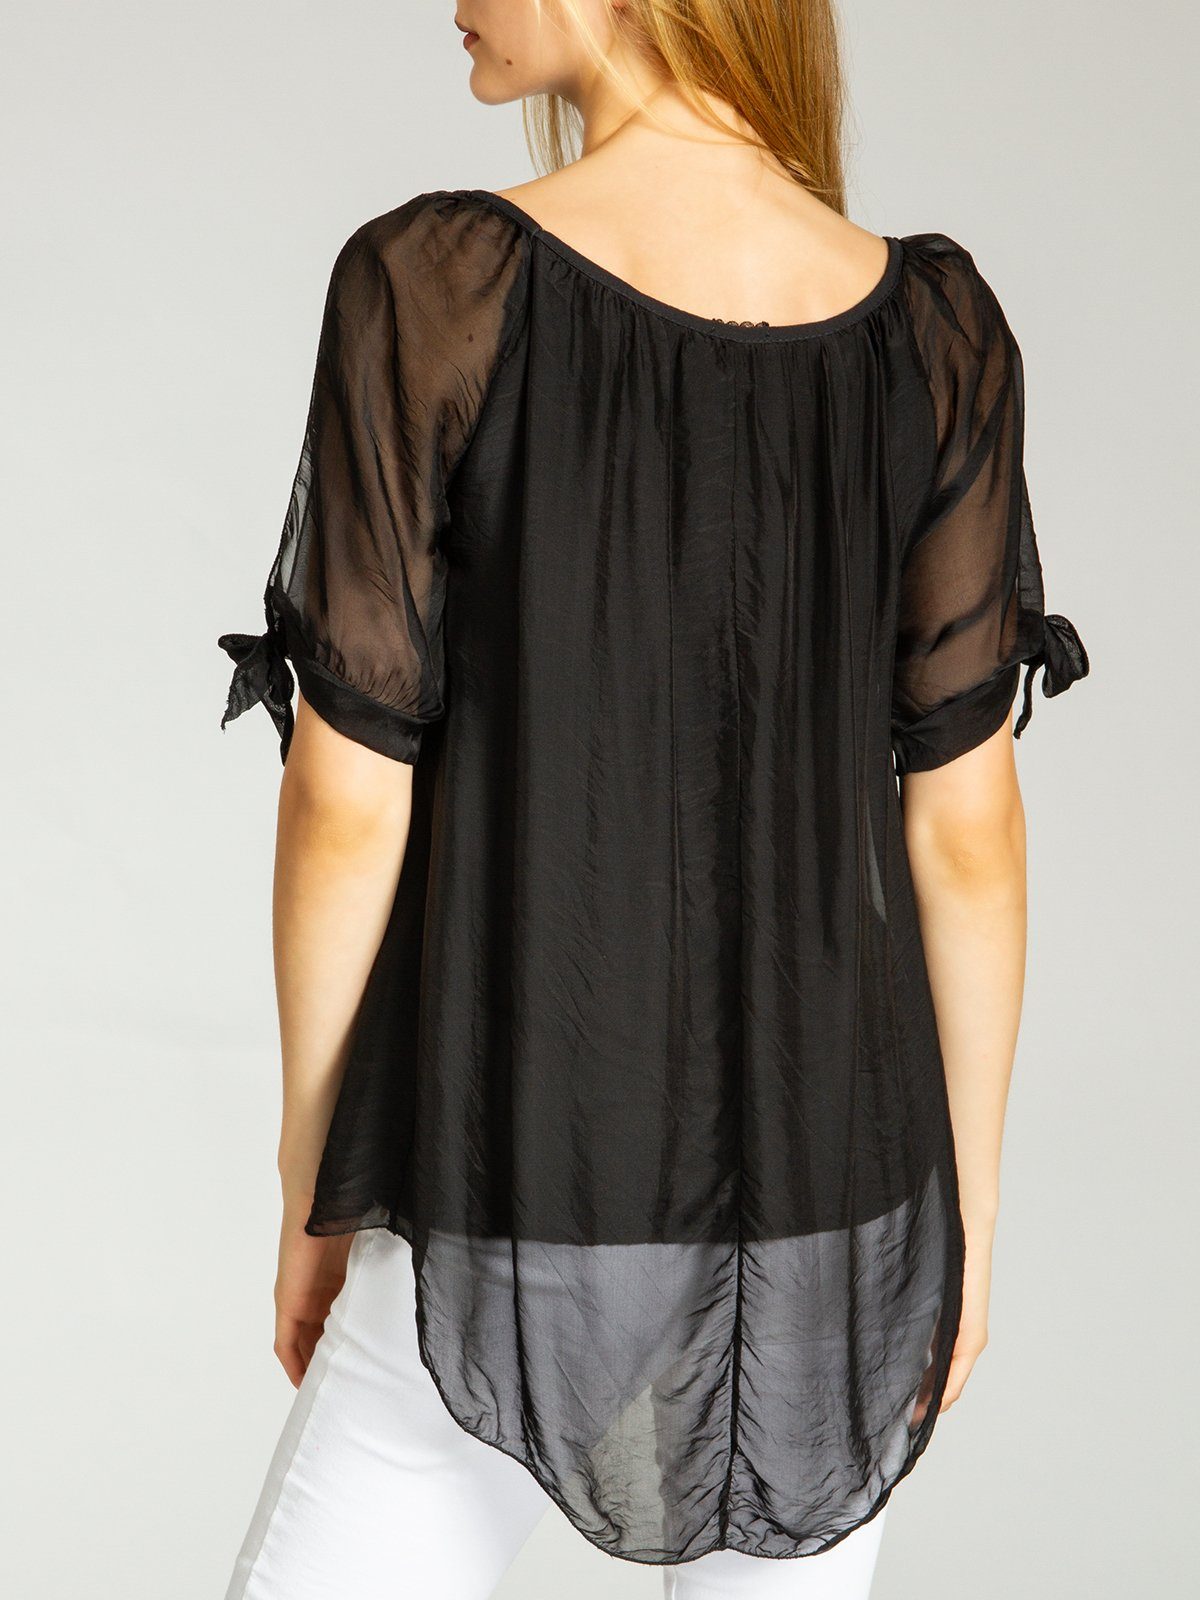 Caspar Shirtbluse BLU020 Damen elegante Seidenanteil Bluse leichte Sommer lange schwarz mit